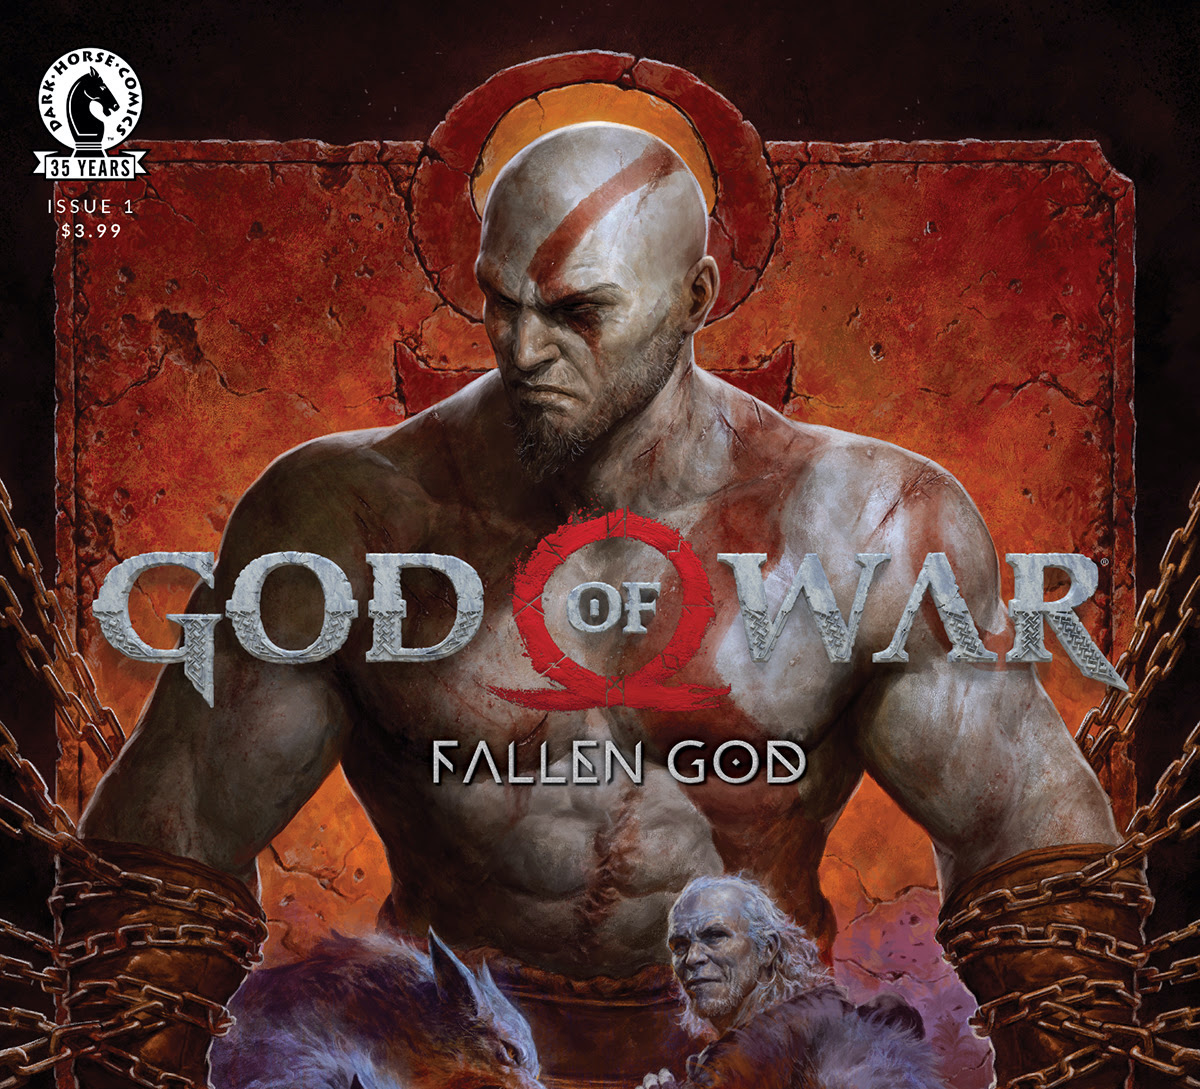 Dark Horse launching new series 'God of War: Fallen God' March 10